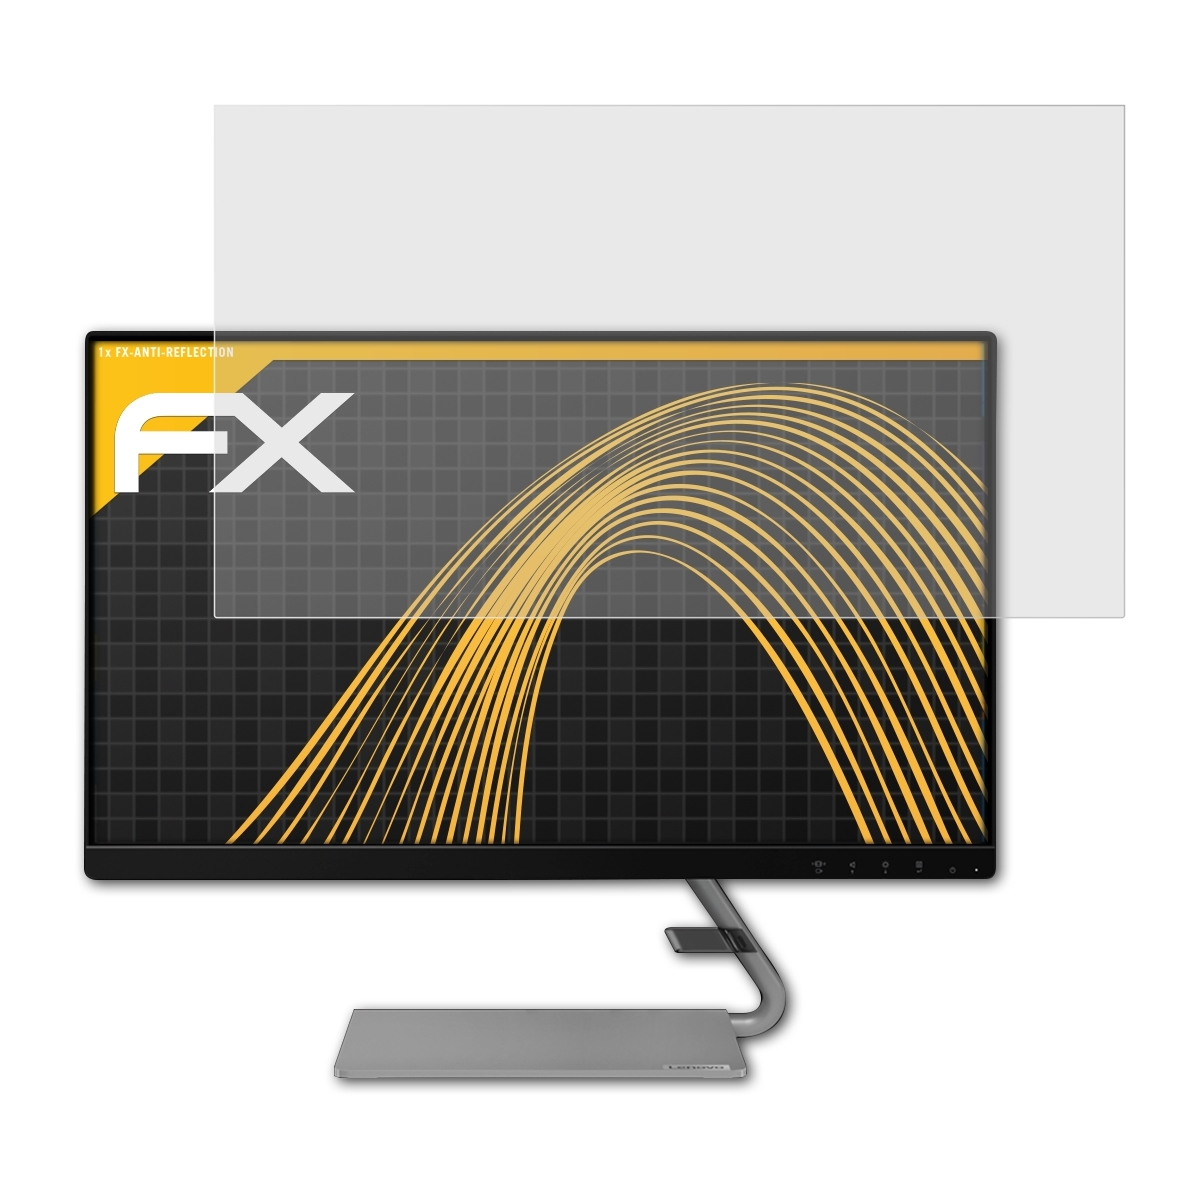 ATFOLIX Lenovo FX-Antireflex Displayschutz(für Q24i-1L)